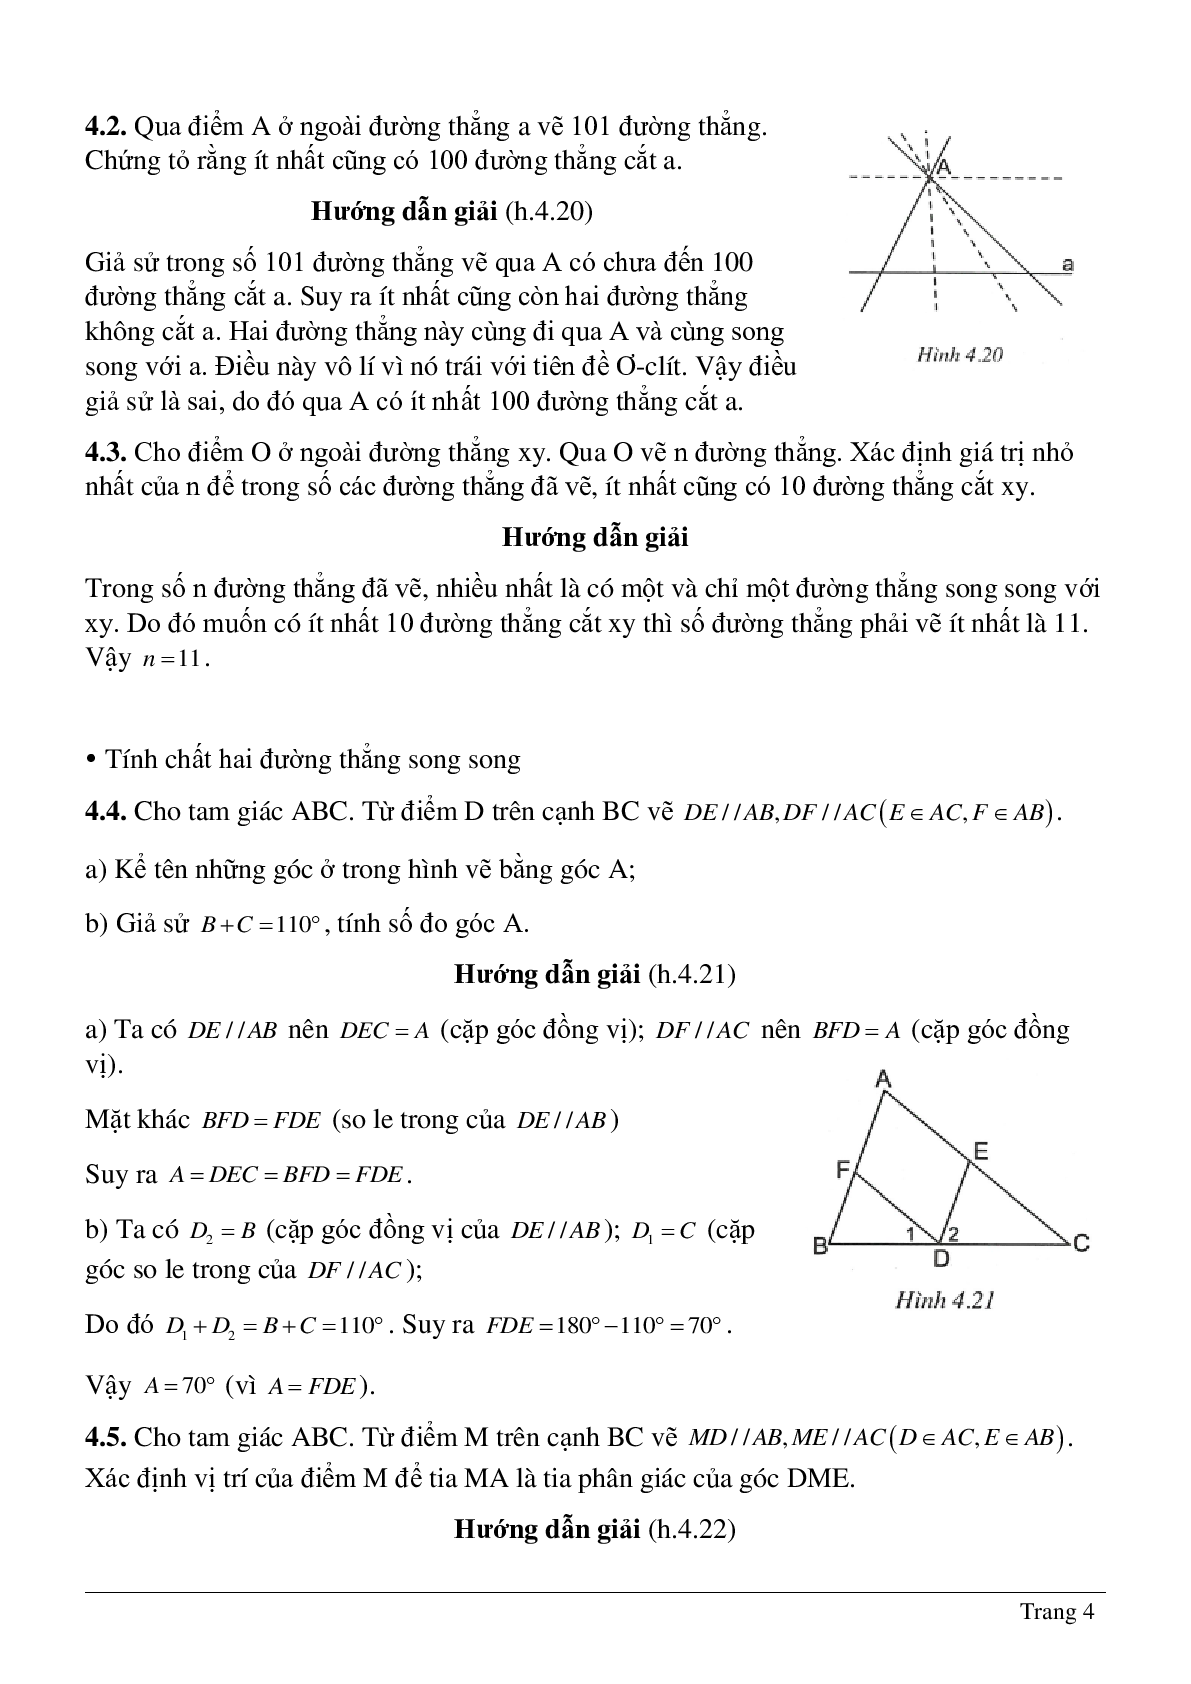 Phương pháp giải và bài tập về Tiên đề Ơ-clit - Tính chất của hai đường thẳng song song có lời giải (trang 4)